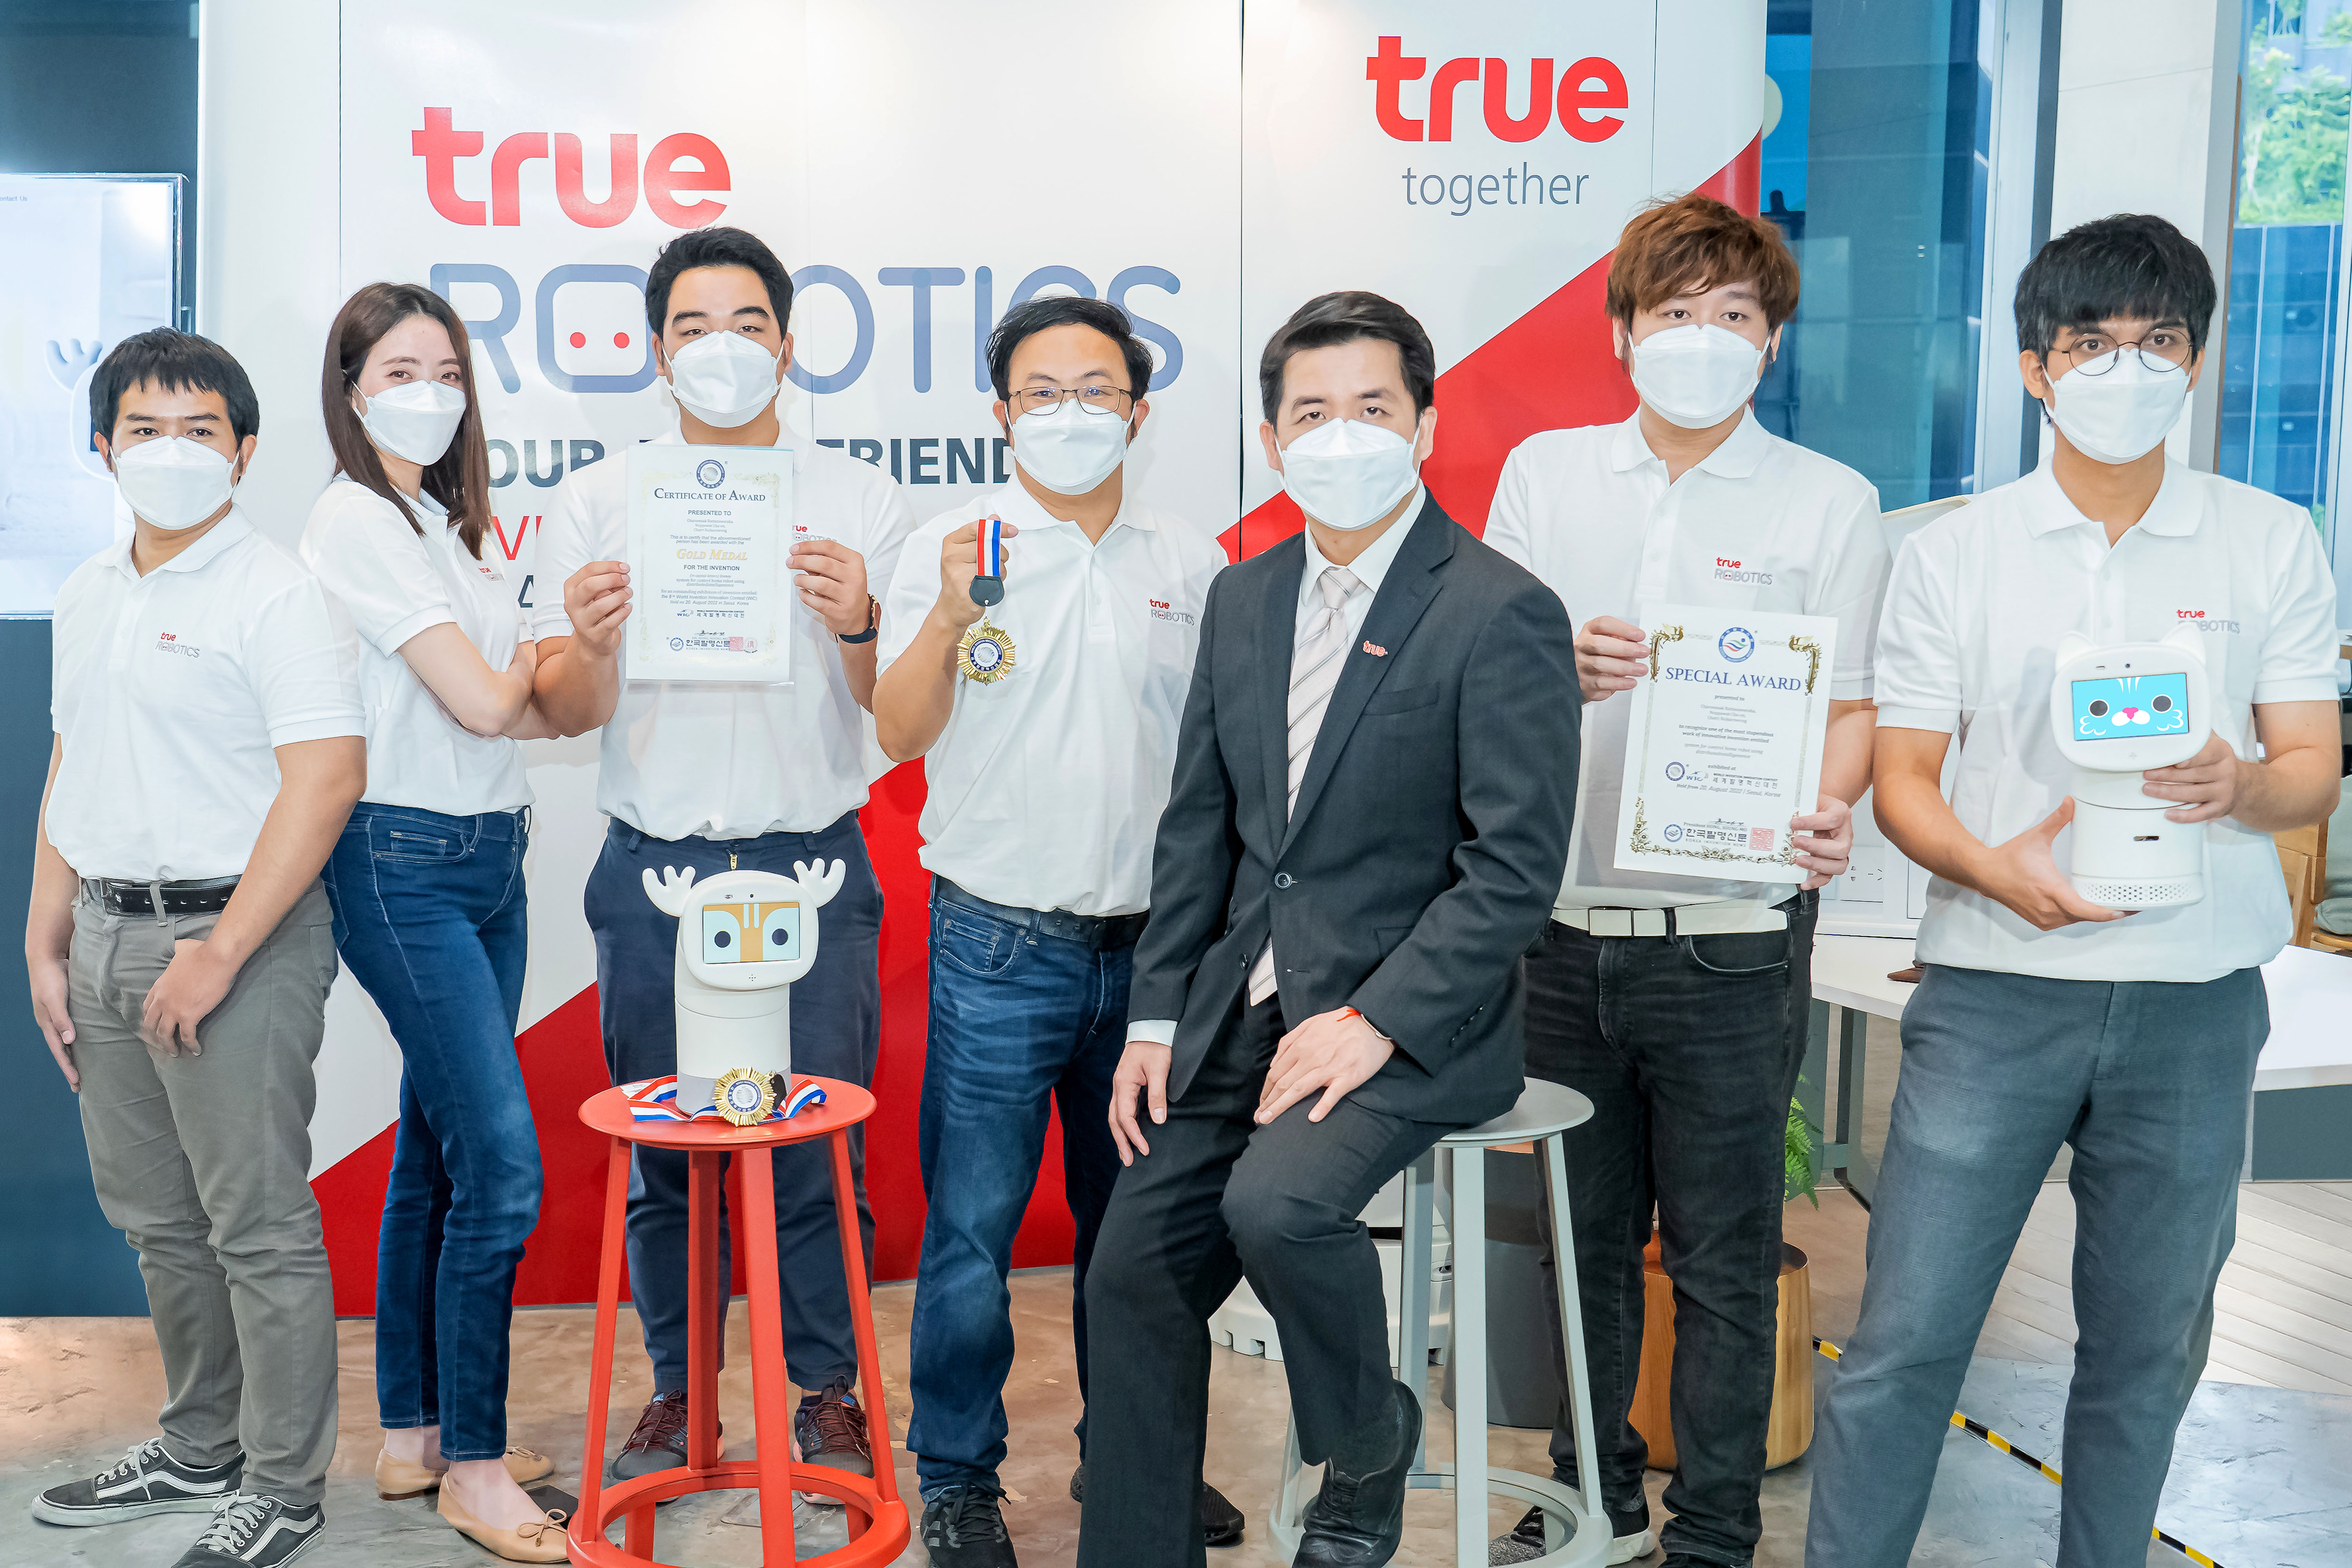 นวัตกรทรู นำหุ่นยนต์ไทย “Home Robot” กระหึ่มเวทีโลกอีกครั้ง คว้าแชมป์เหรียญทองและอีกหนึ่งรางวัลพิเศษ ใน “World Invention Innovation Contest 2022” แดนโสมขาว